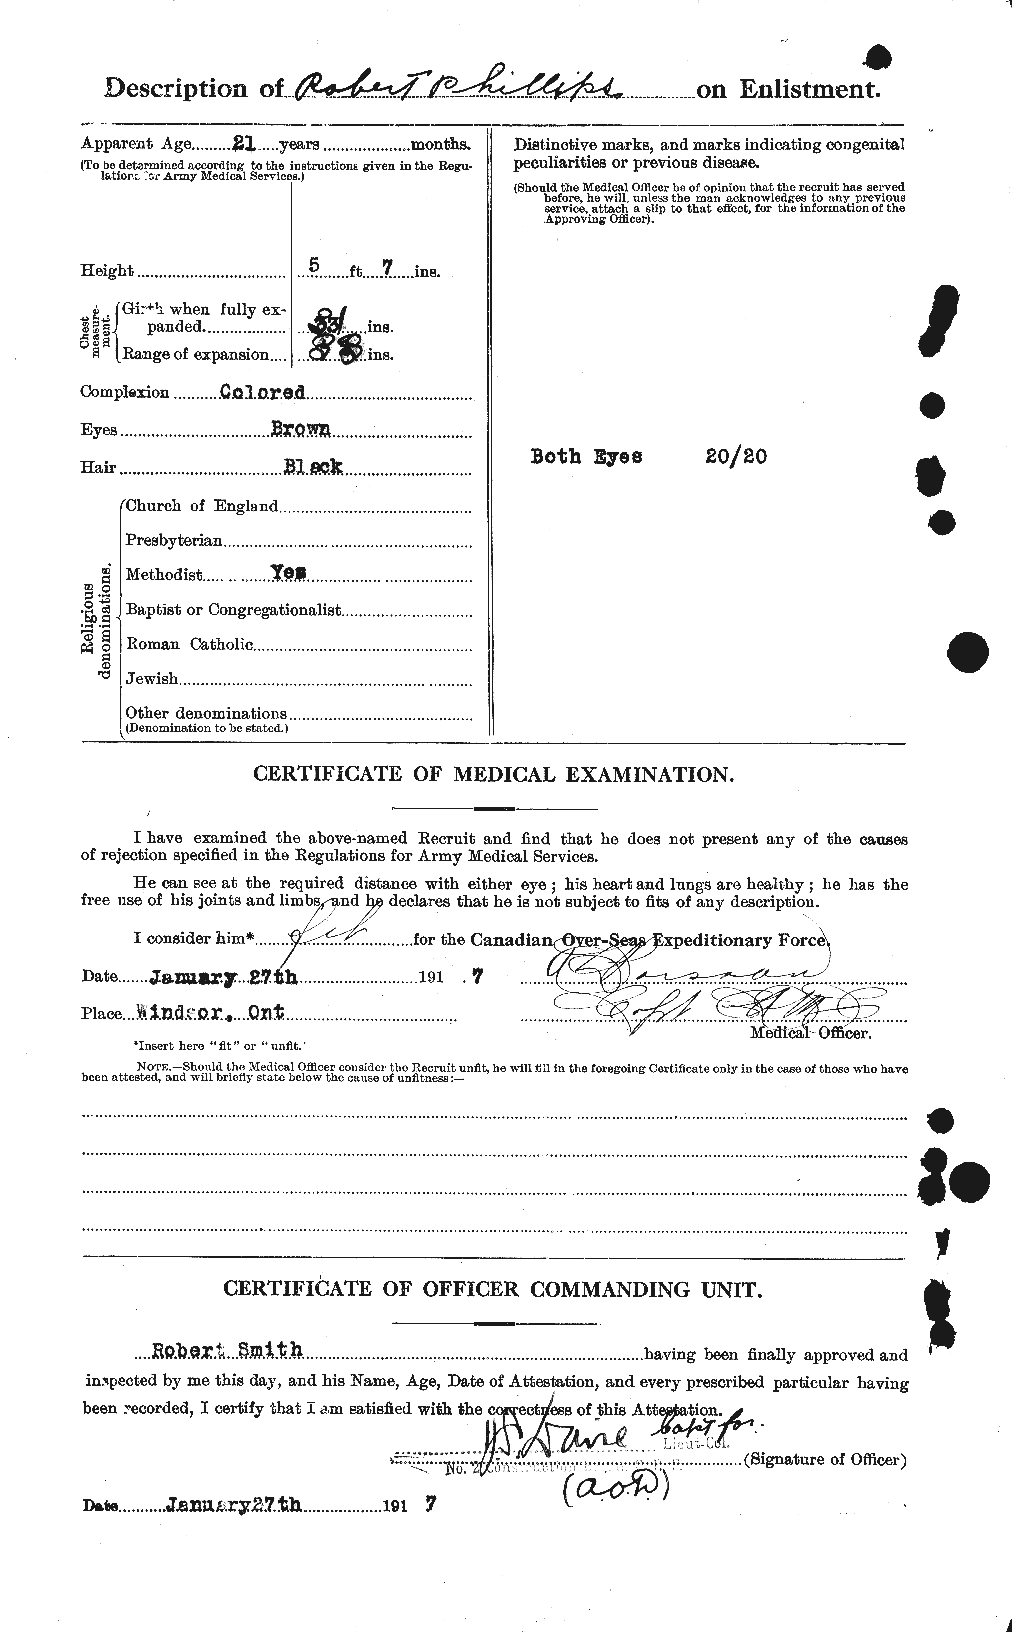 Dossiers du Personnel de la Première Guerre mondiale - CEC 577820b